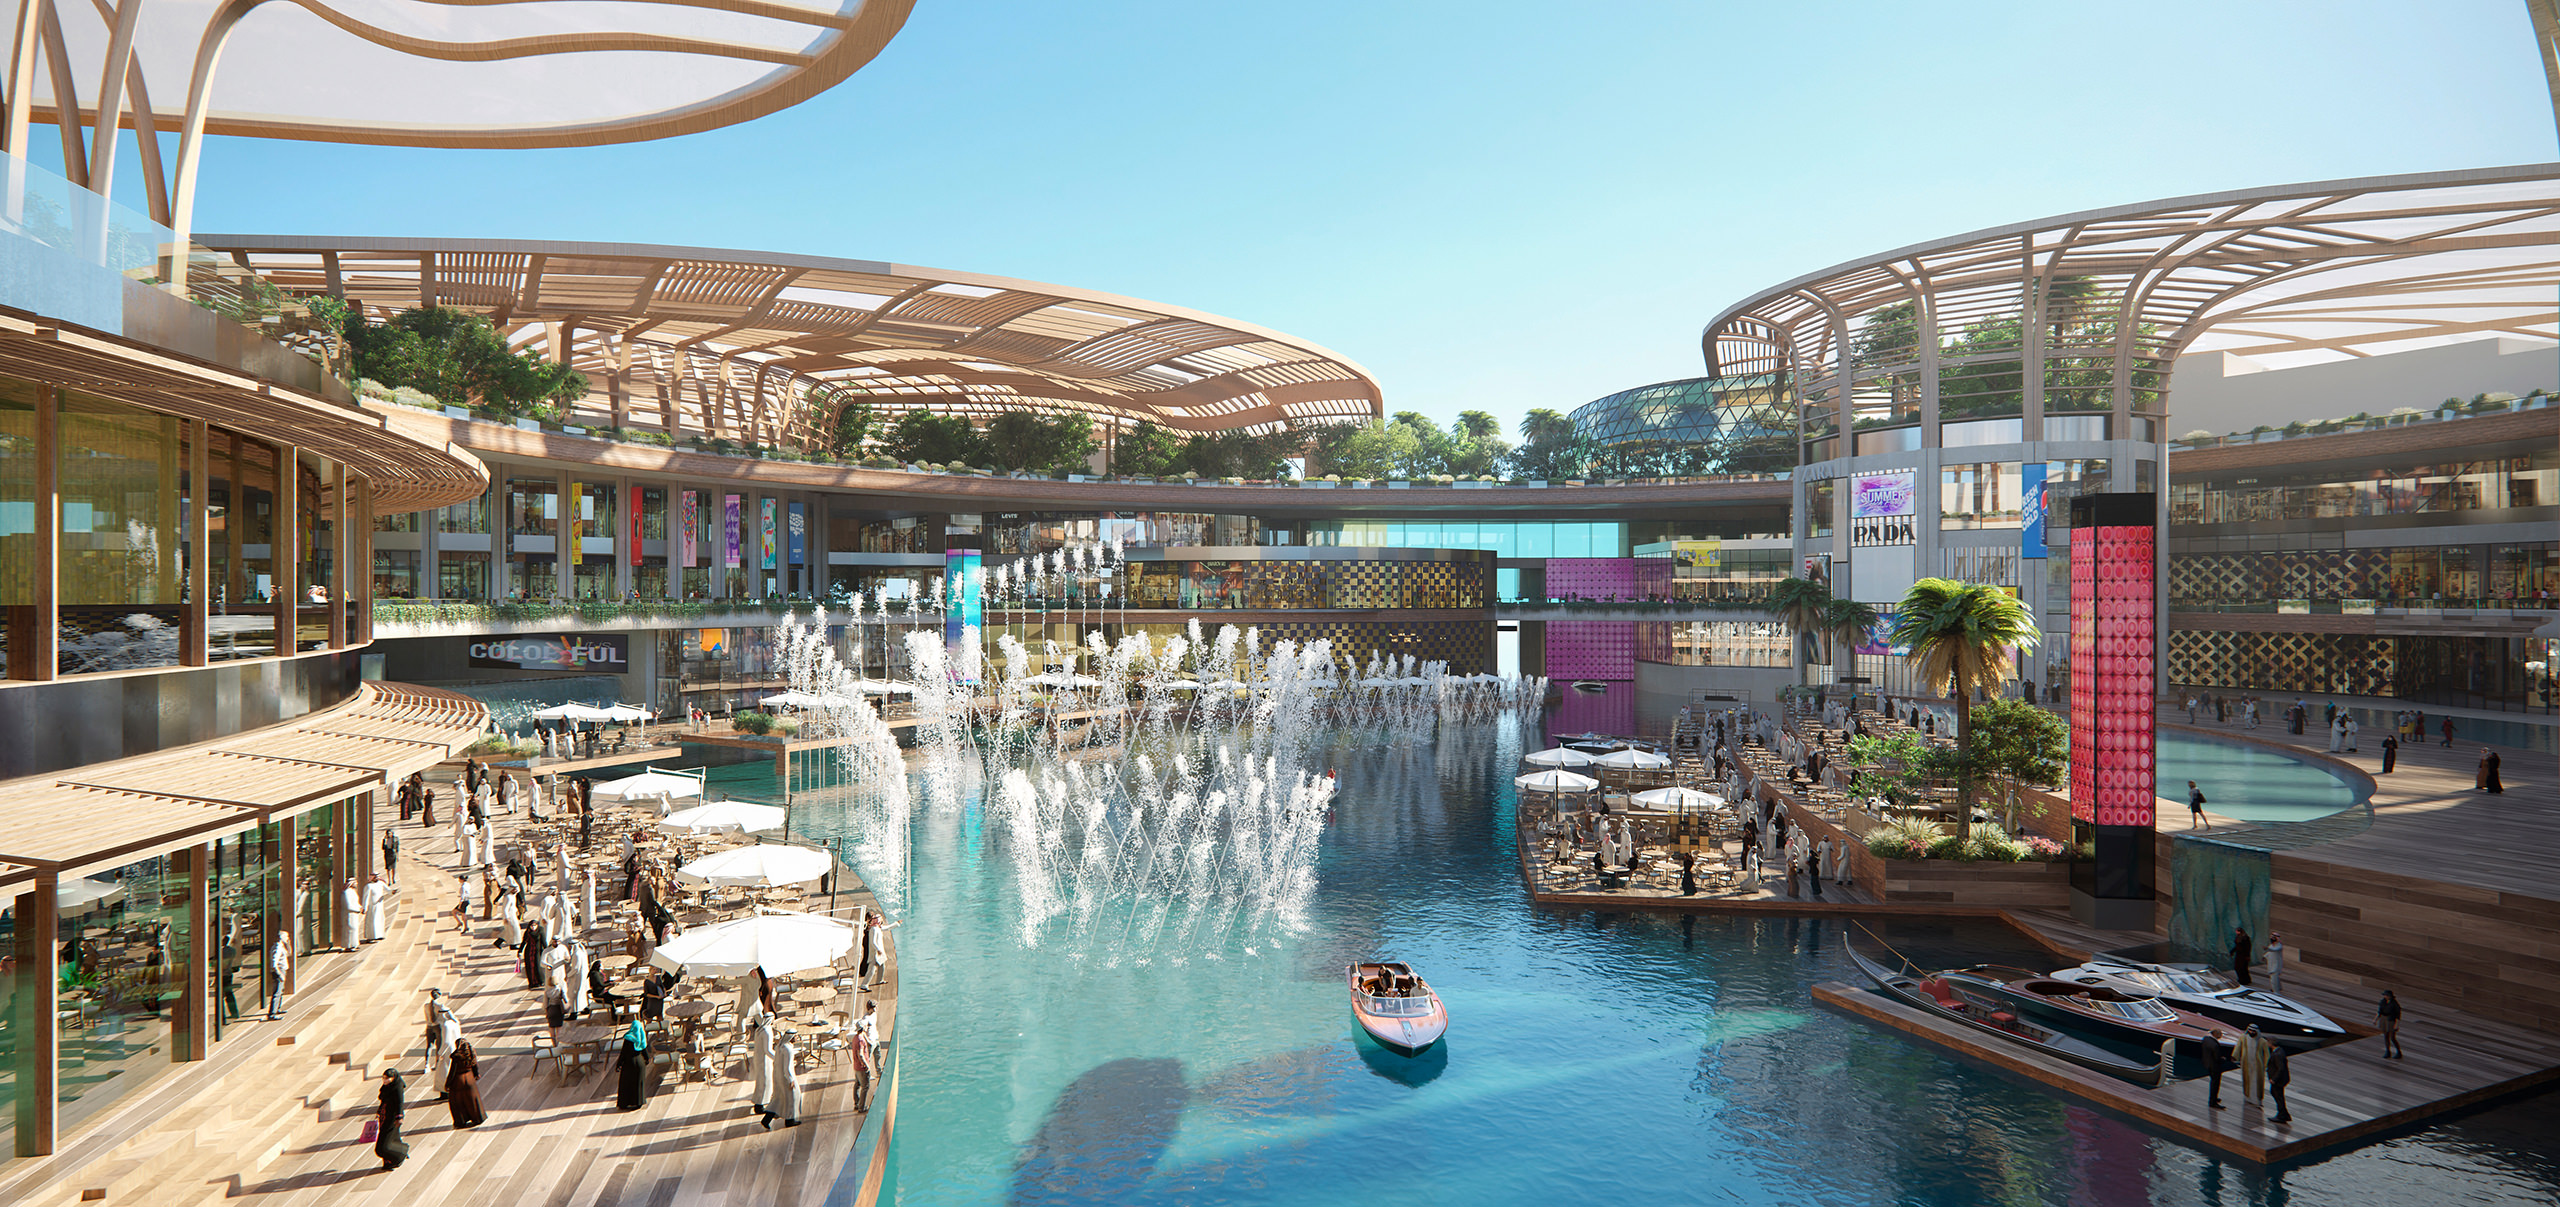 Visualisation 3D d'un centre commercial haut de gamme avec un patio au bord de l'eau avec plusieurs fontaines